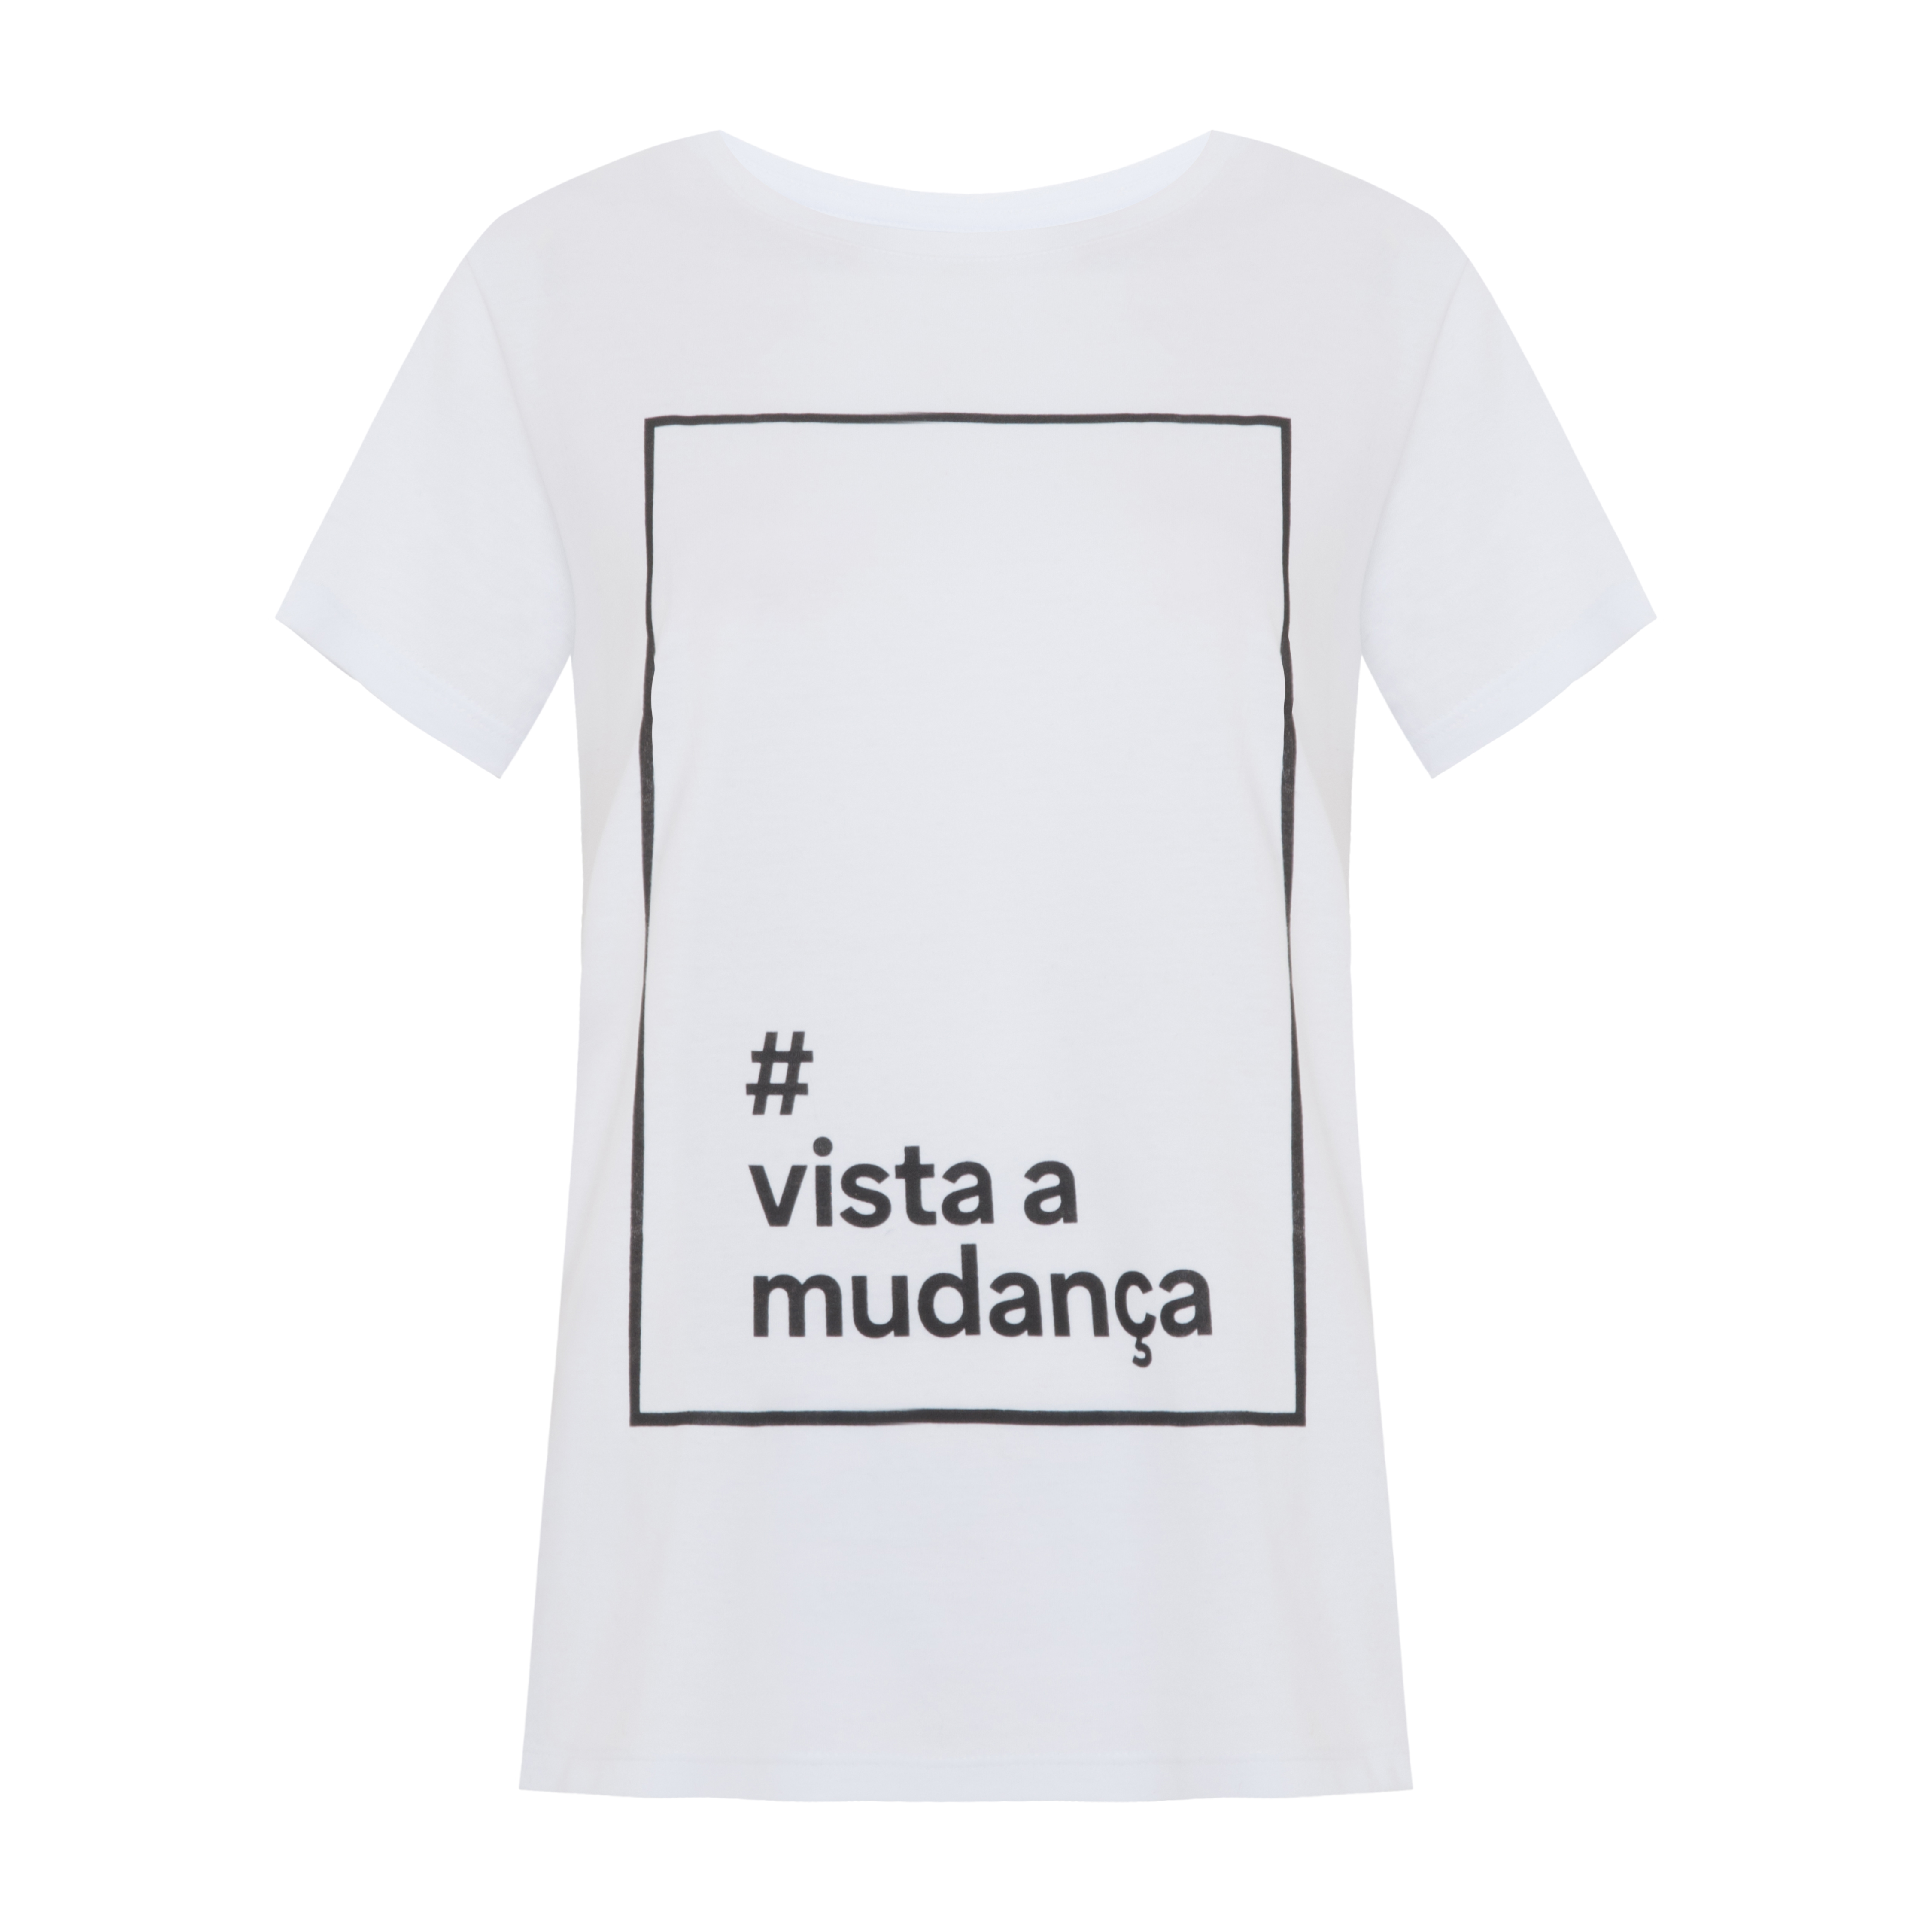 Camiseta da campanha #VistaAMudança, R$25,99